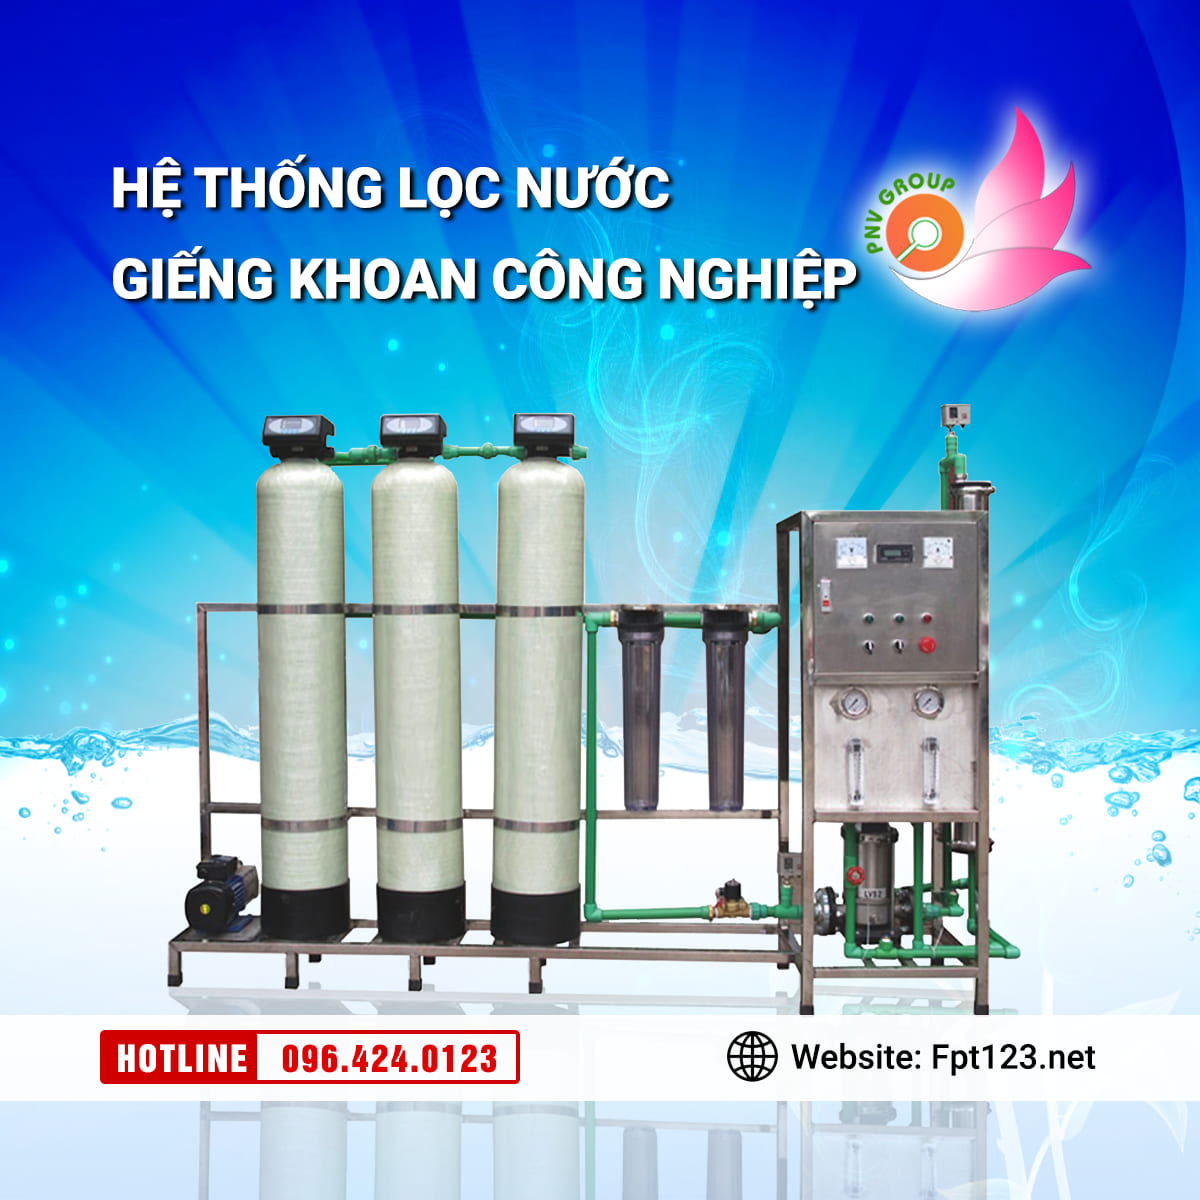 Lắp đặt hệ thống lọc nước giếng khoan ở Yên Mỹ, Hưng Yên